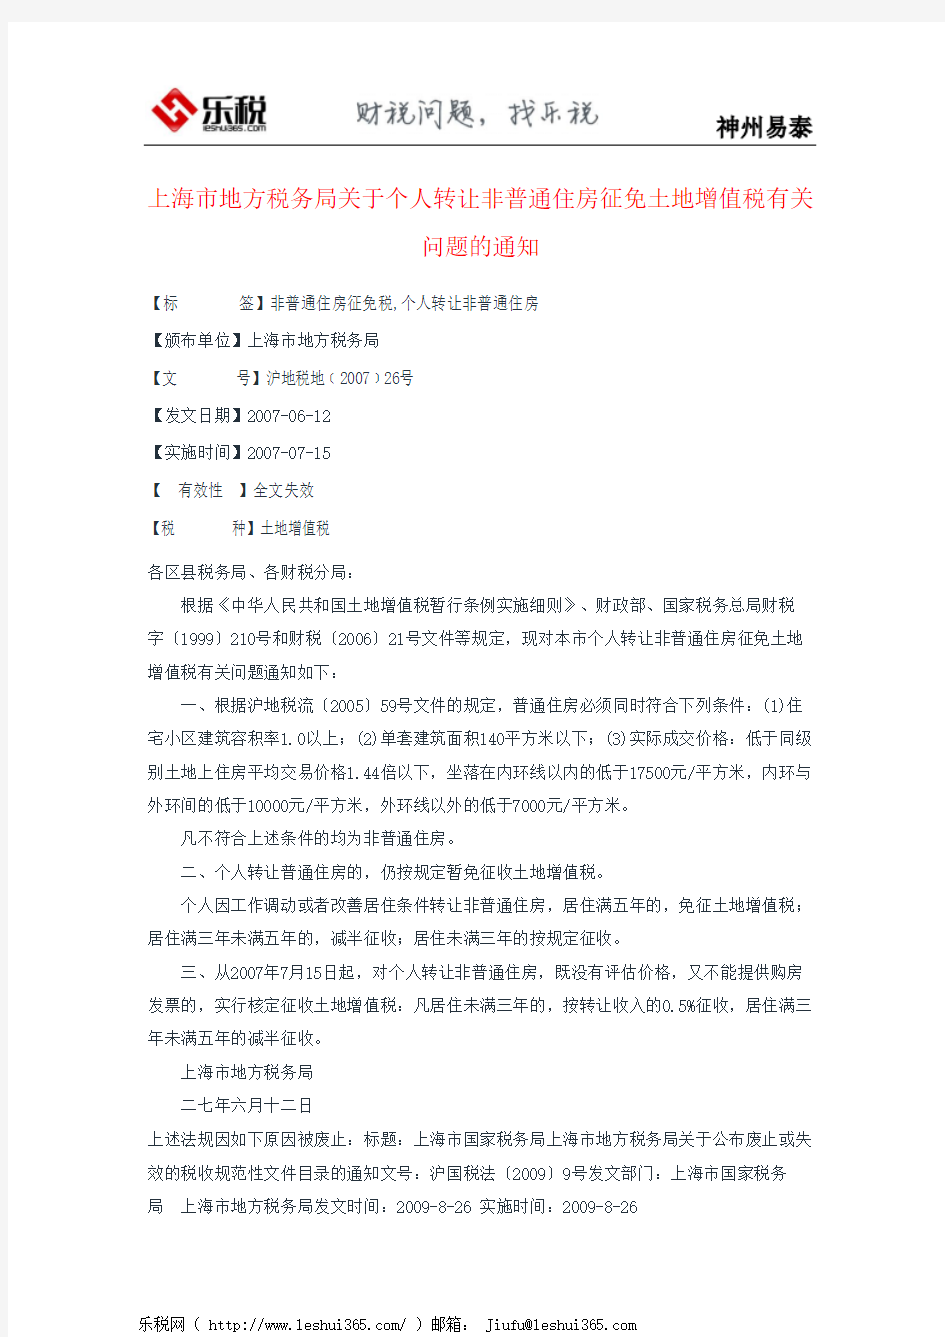 上海市地方税务局关于个人转让非普通住房征免土地增值税有关问题的通知